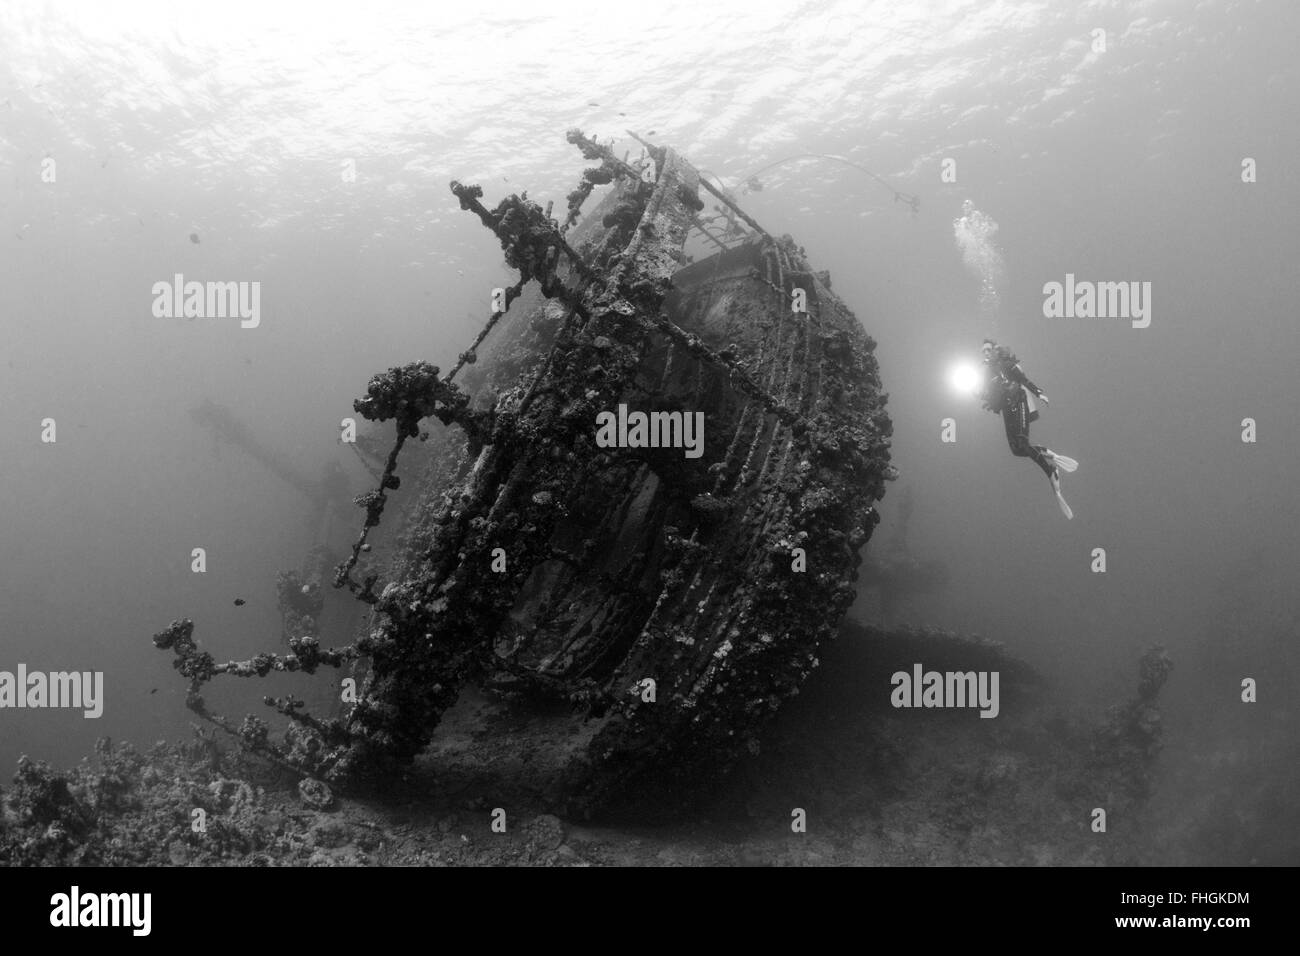 Subacqueo in immersione al relitto Umbria, Wingate Reef, Mar Rosso, Sudan Foto Stock